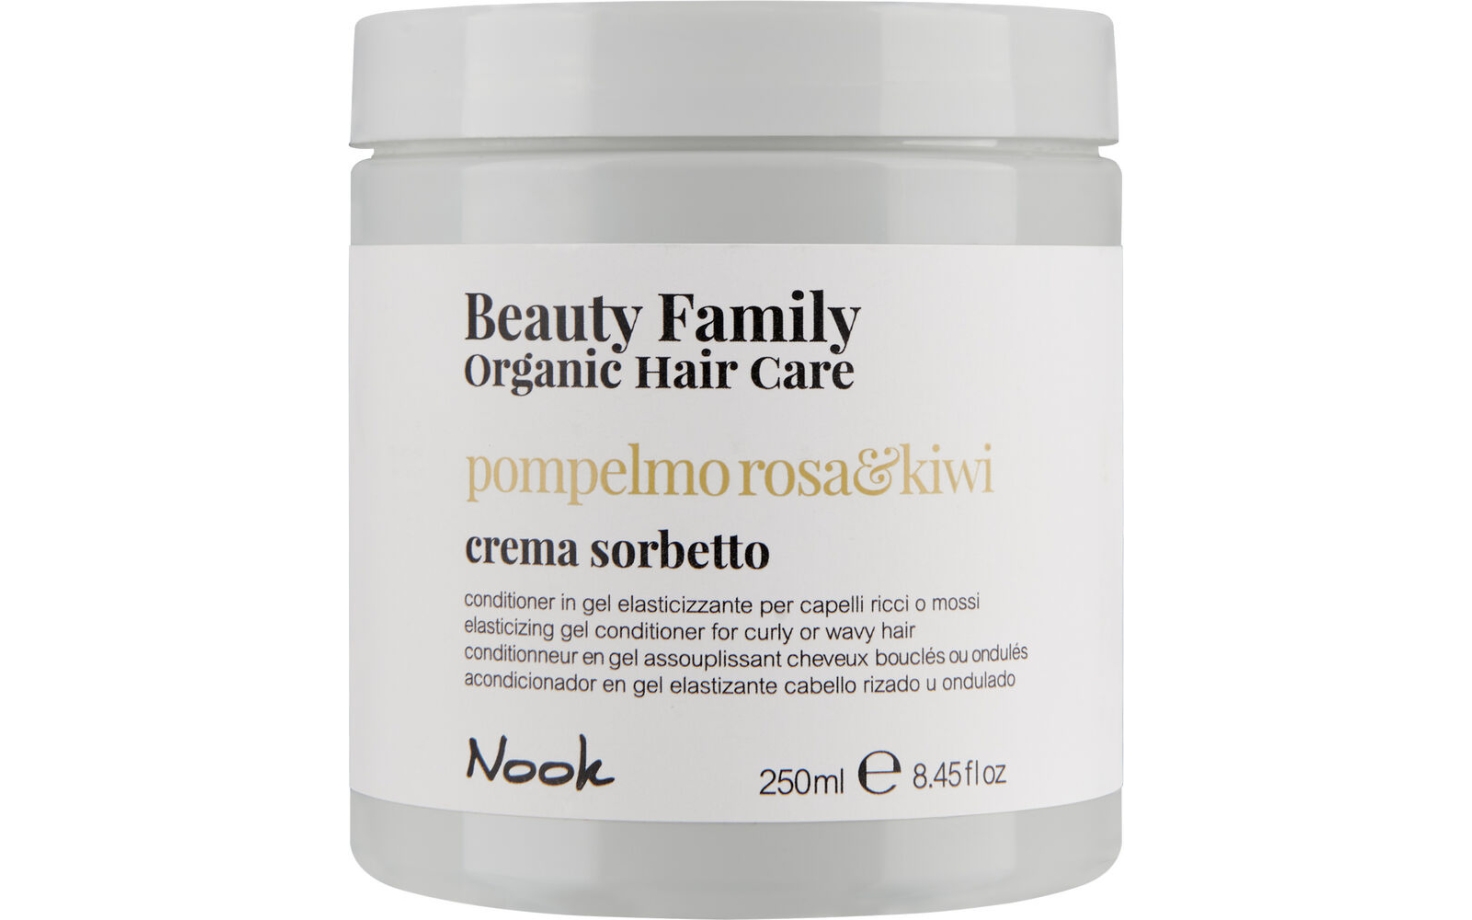 Beauty Family Pompelmo Rosa & Kiwi Conditioner